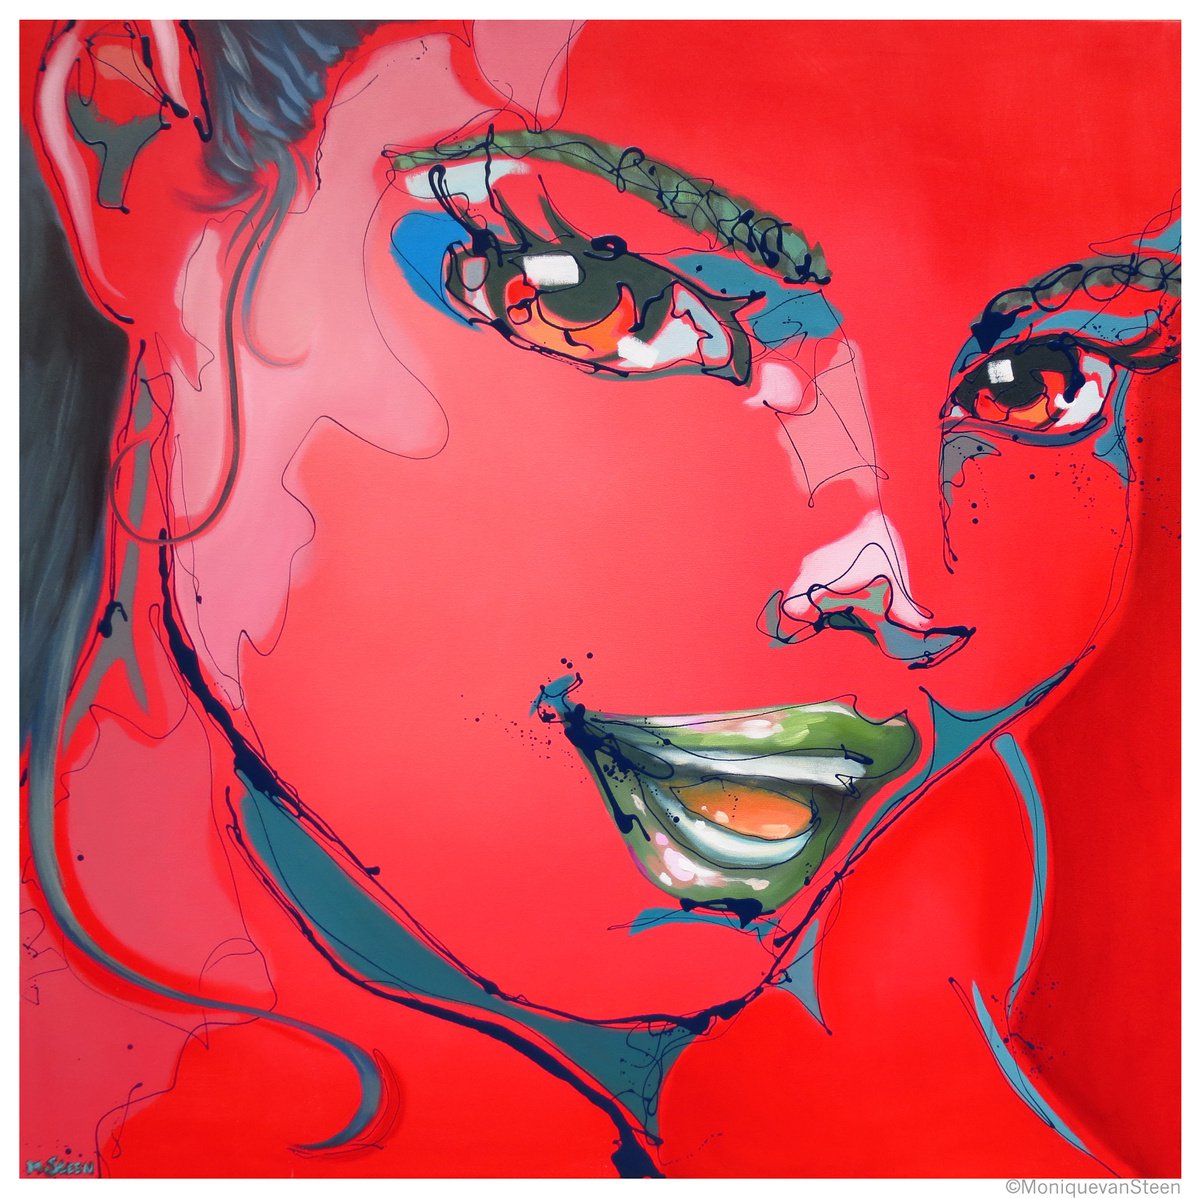 Big red pop art portrait: Dinamene by Monique van Steen